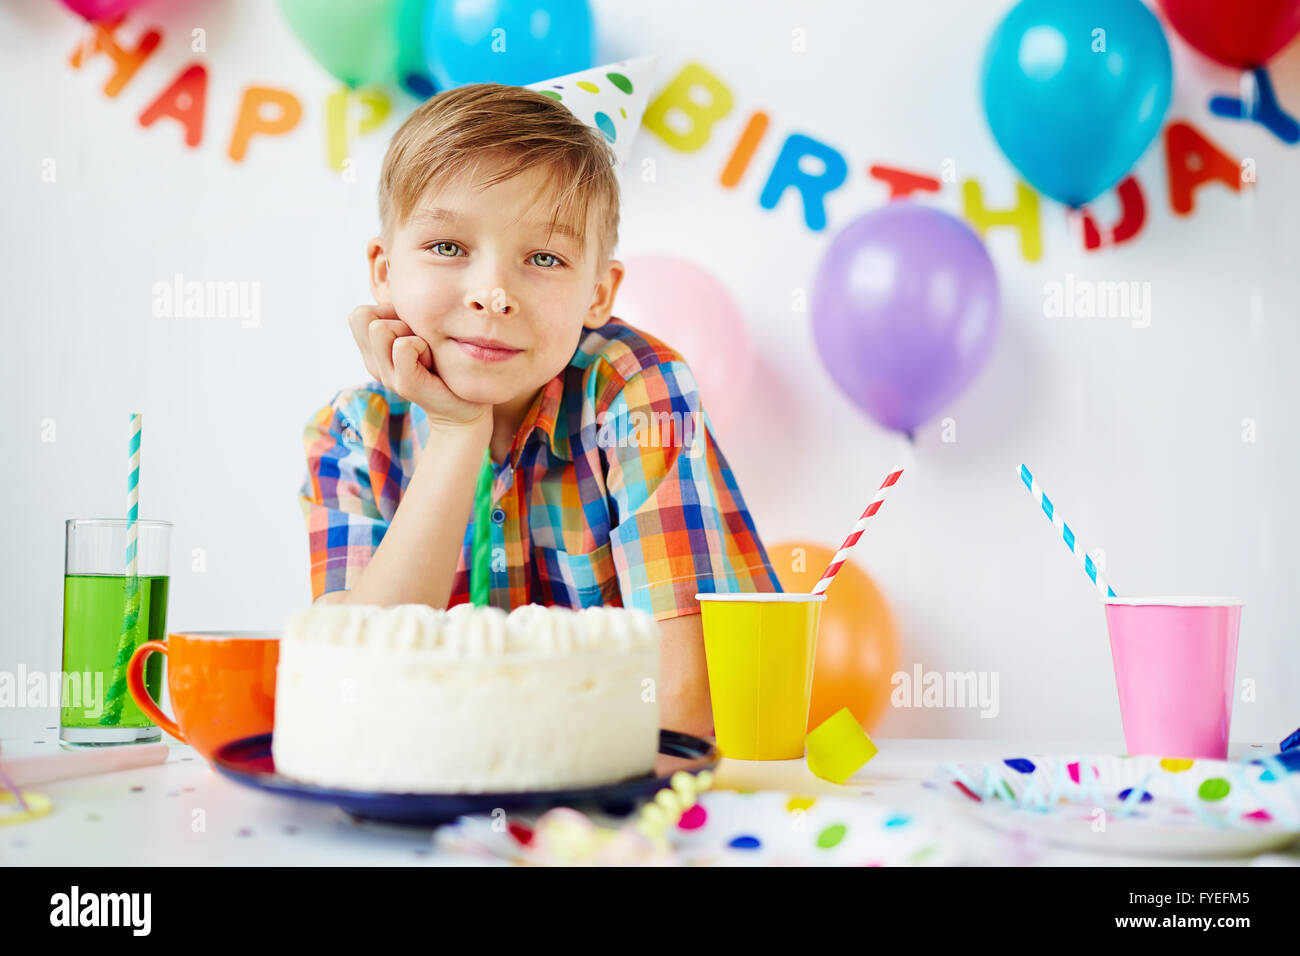 Ребенок хочет день рождение. Детский день рождения. Фотосессия 10 лет мальчику на день рождения. Праздник на 10 лет мальчику на день рождения. Фотосессия 7 лет мальчик день рождения.